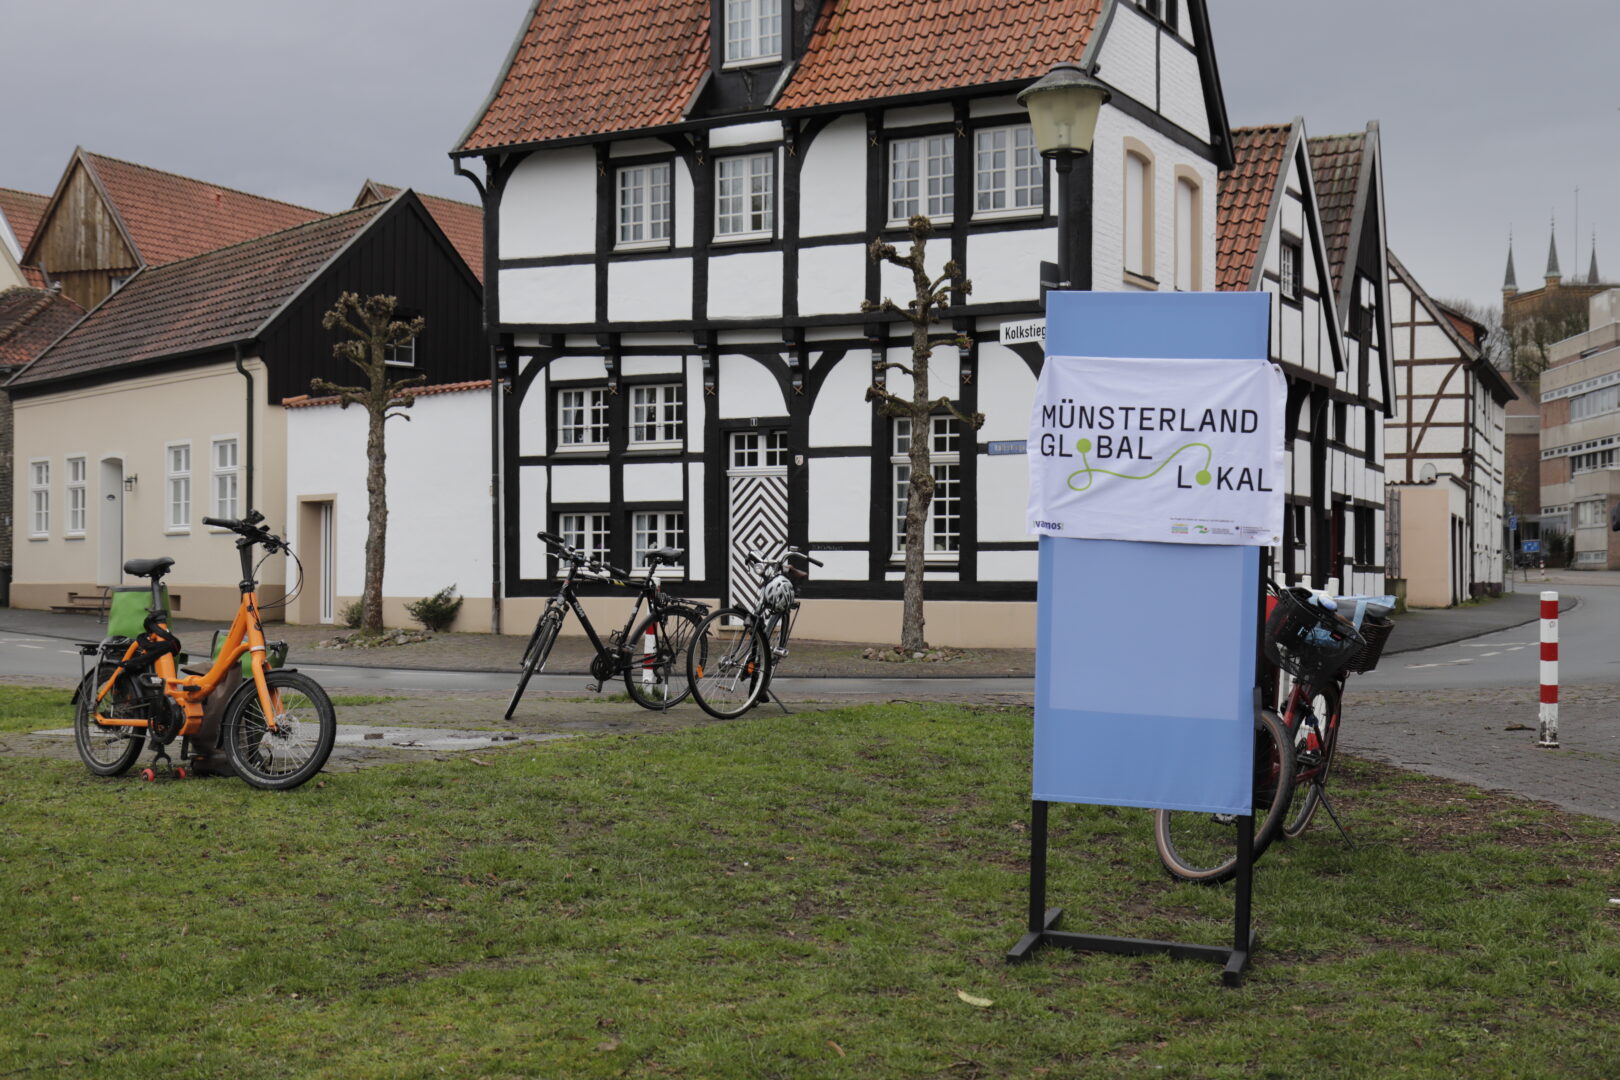 In sieben interaktiven, themenspezifischen Mitmachstationen an verschiedenen Orten im südlichen Münsterland werden globale Themen und Zusammenhänge erfahrbar und lokalisiert.